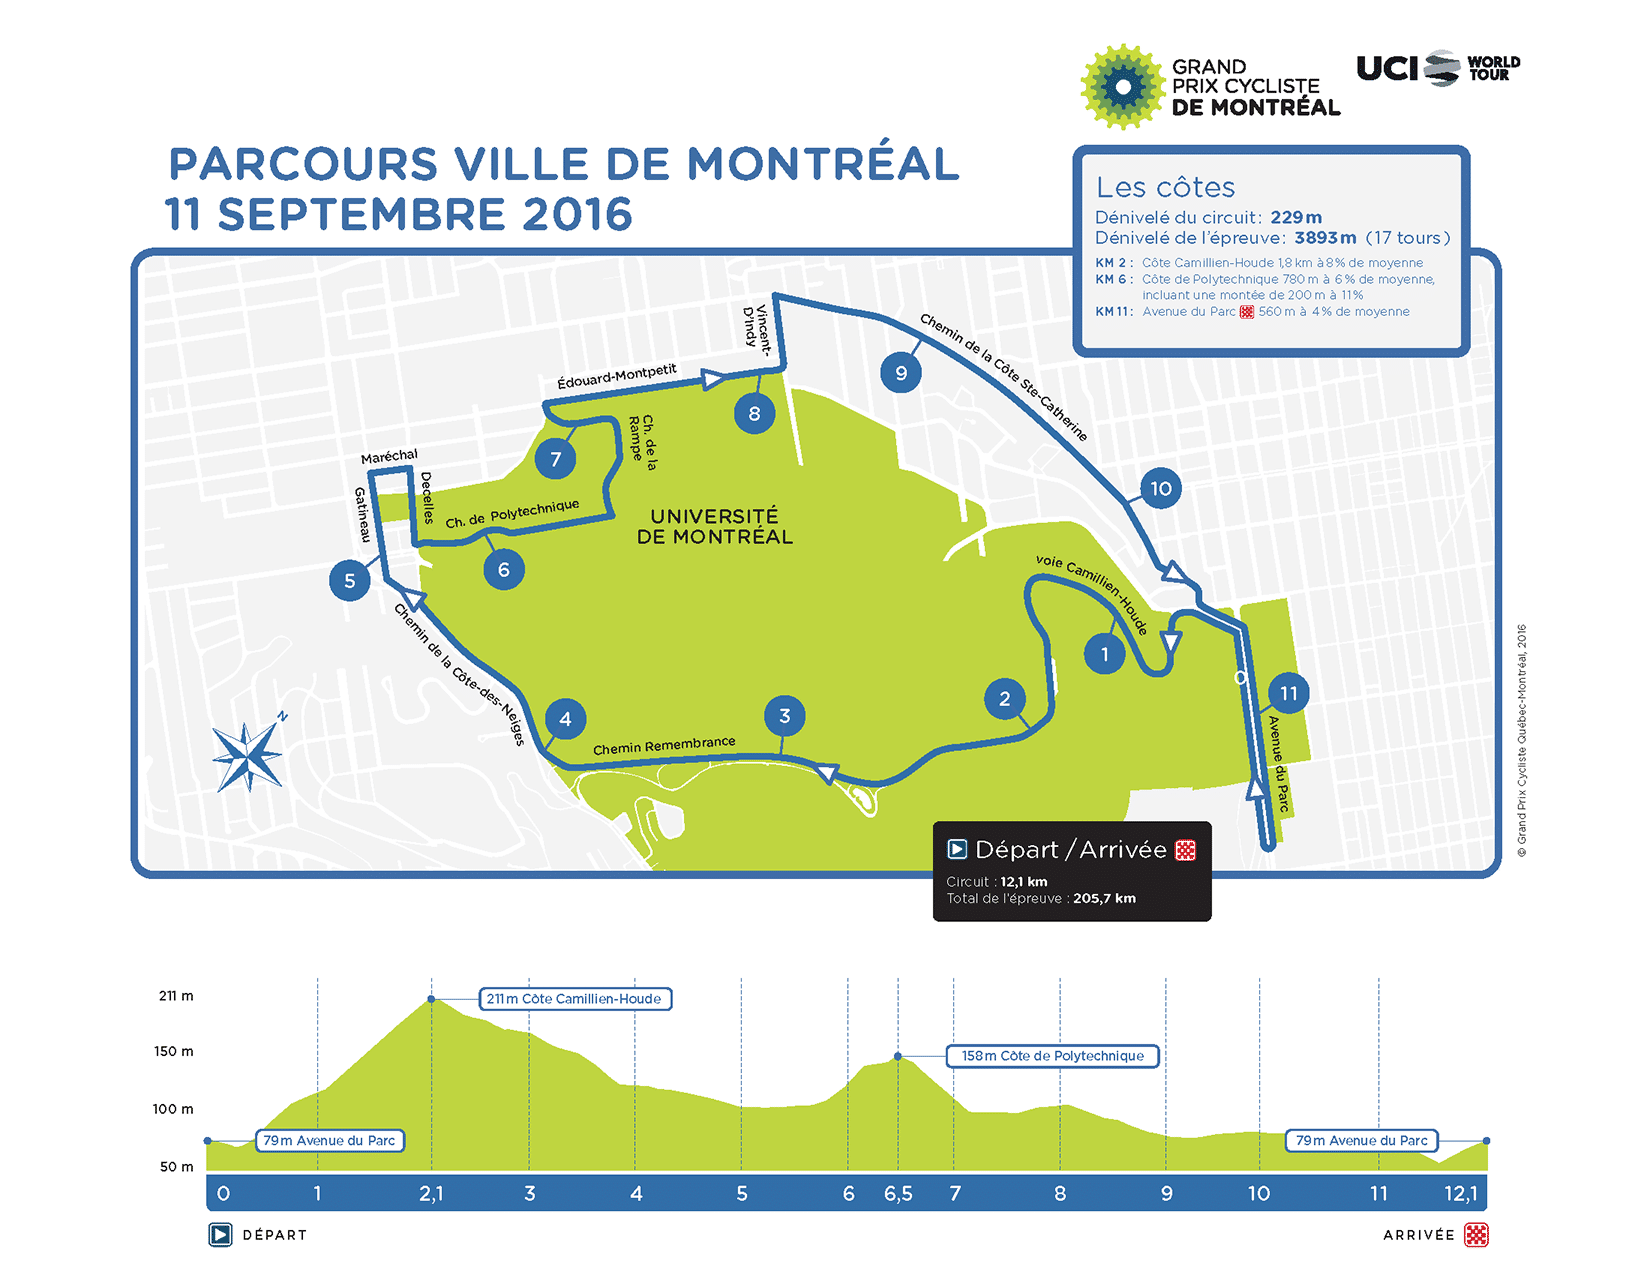 TODAYCYCLING - Le parcours et le profil du circuit du Grand Prix de Montréal 2016.